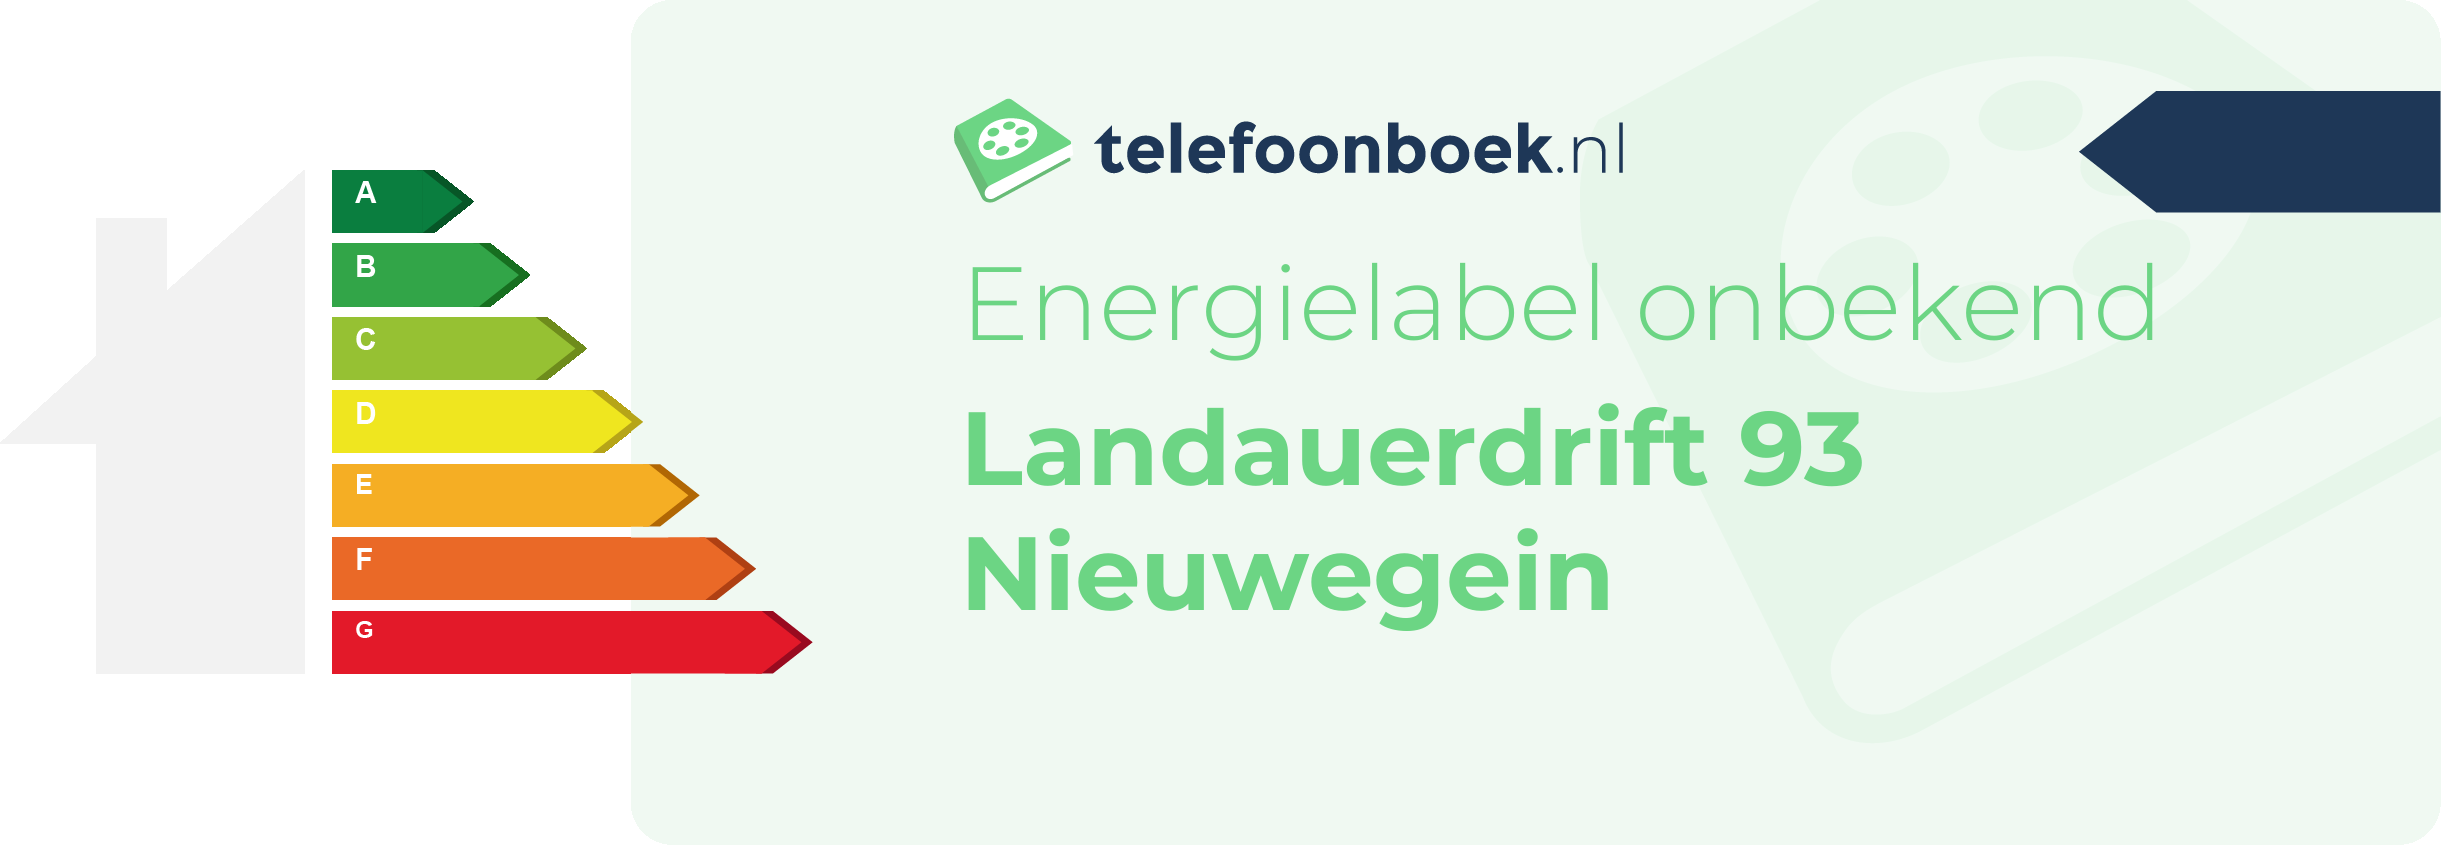 Energielabel Landauerdrift 93 Nieuwegein